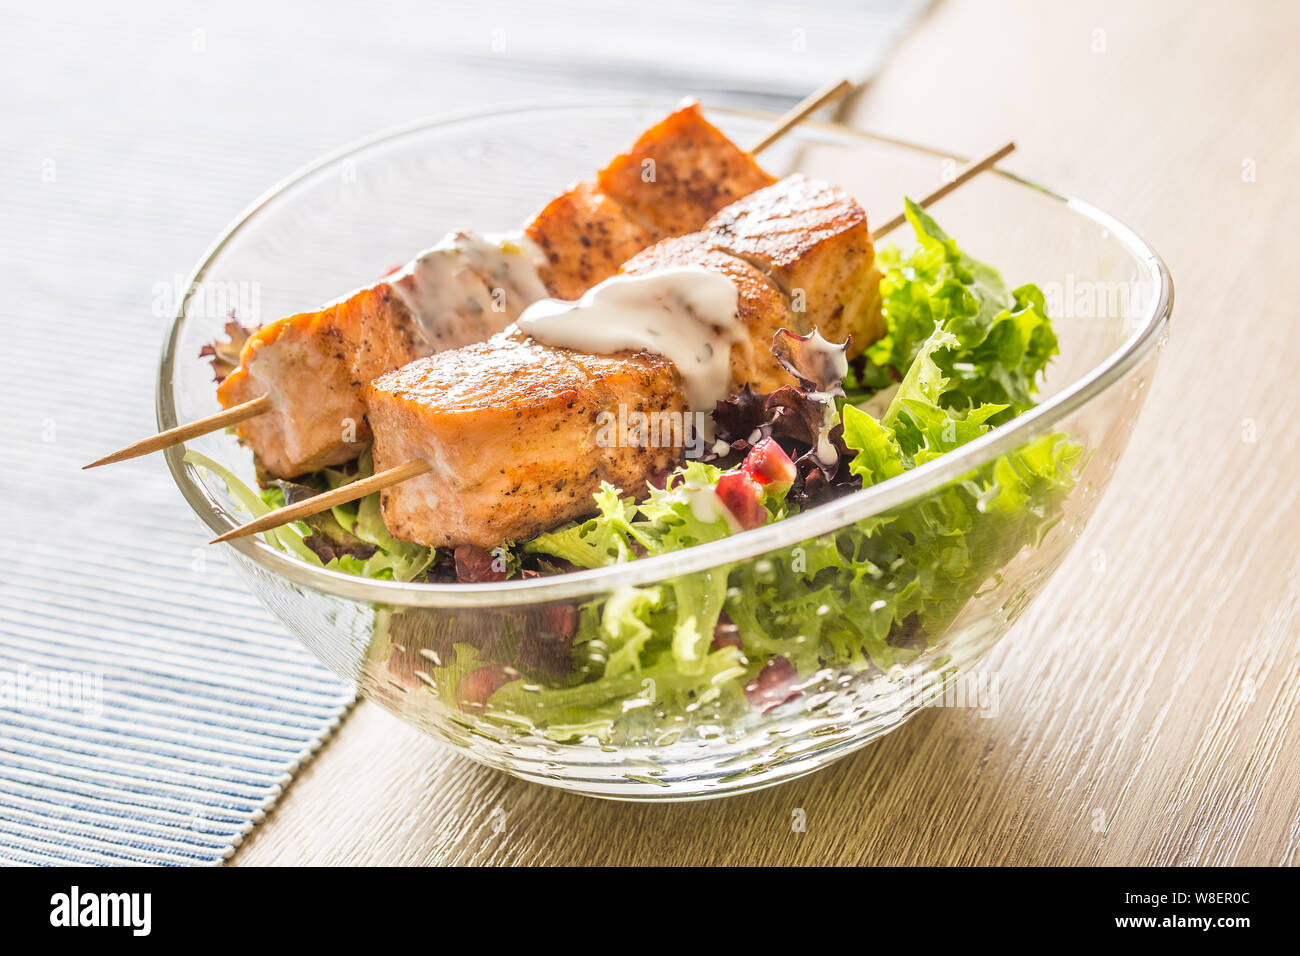 Les brochettes de saumon grillé avec de la laitue d'été salat pomehranate graines huile d'olive et vinaigrette. L'alimentation des poissons en bonne santé avec des fruits et légumes Banque D'Images